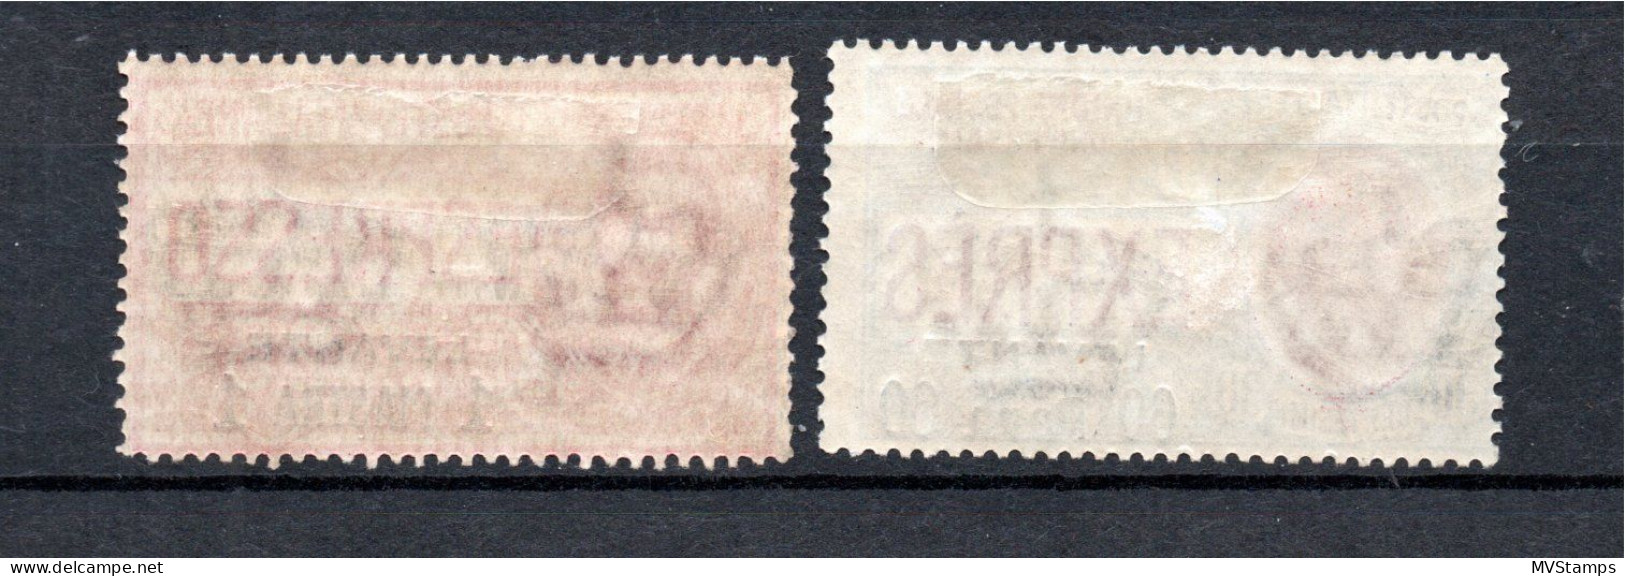 Italian Levant 1908 Old Set Overpinted Espresso Stamps (Michel II) MLH - Algemene Uitgaven